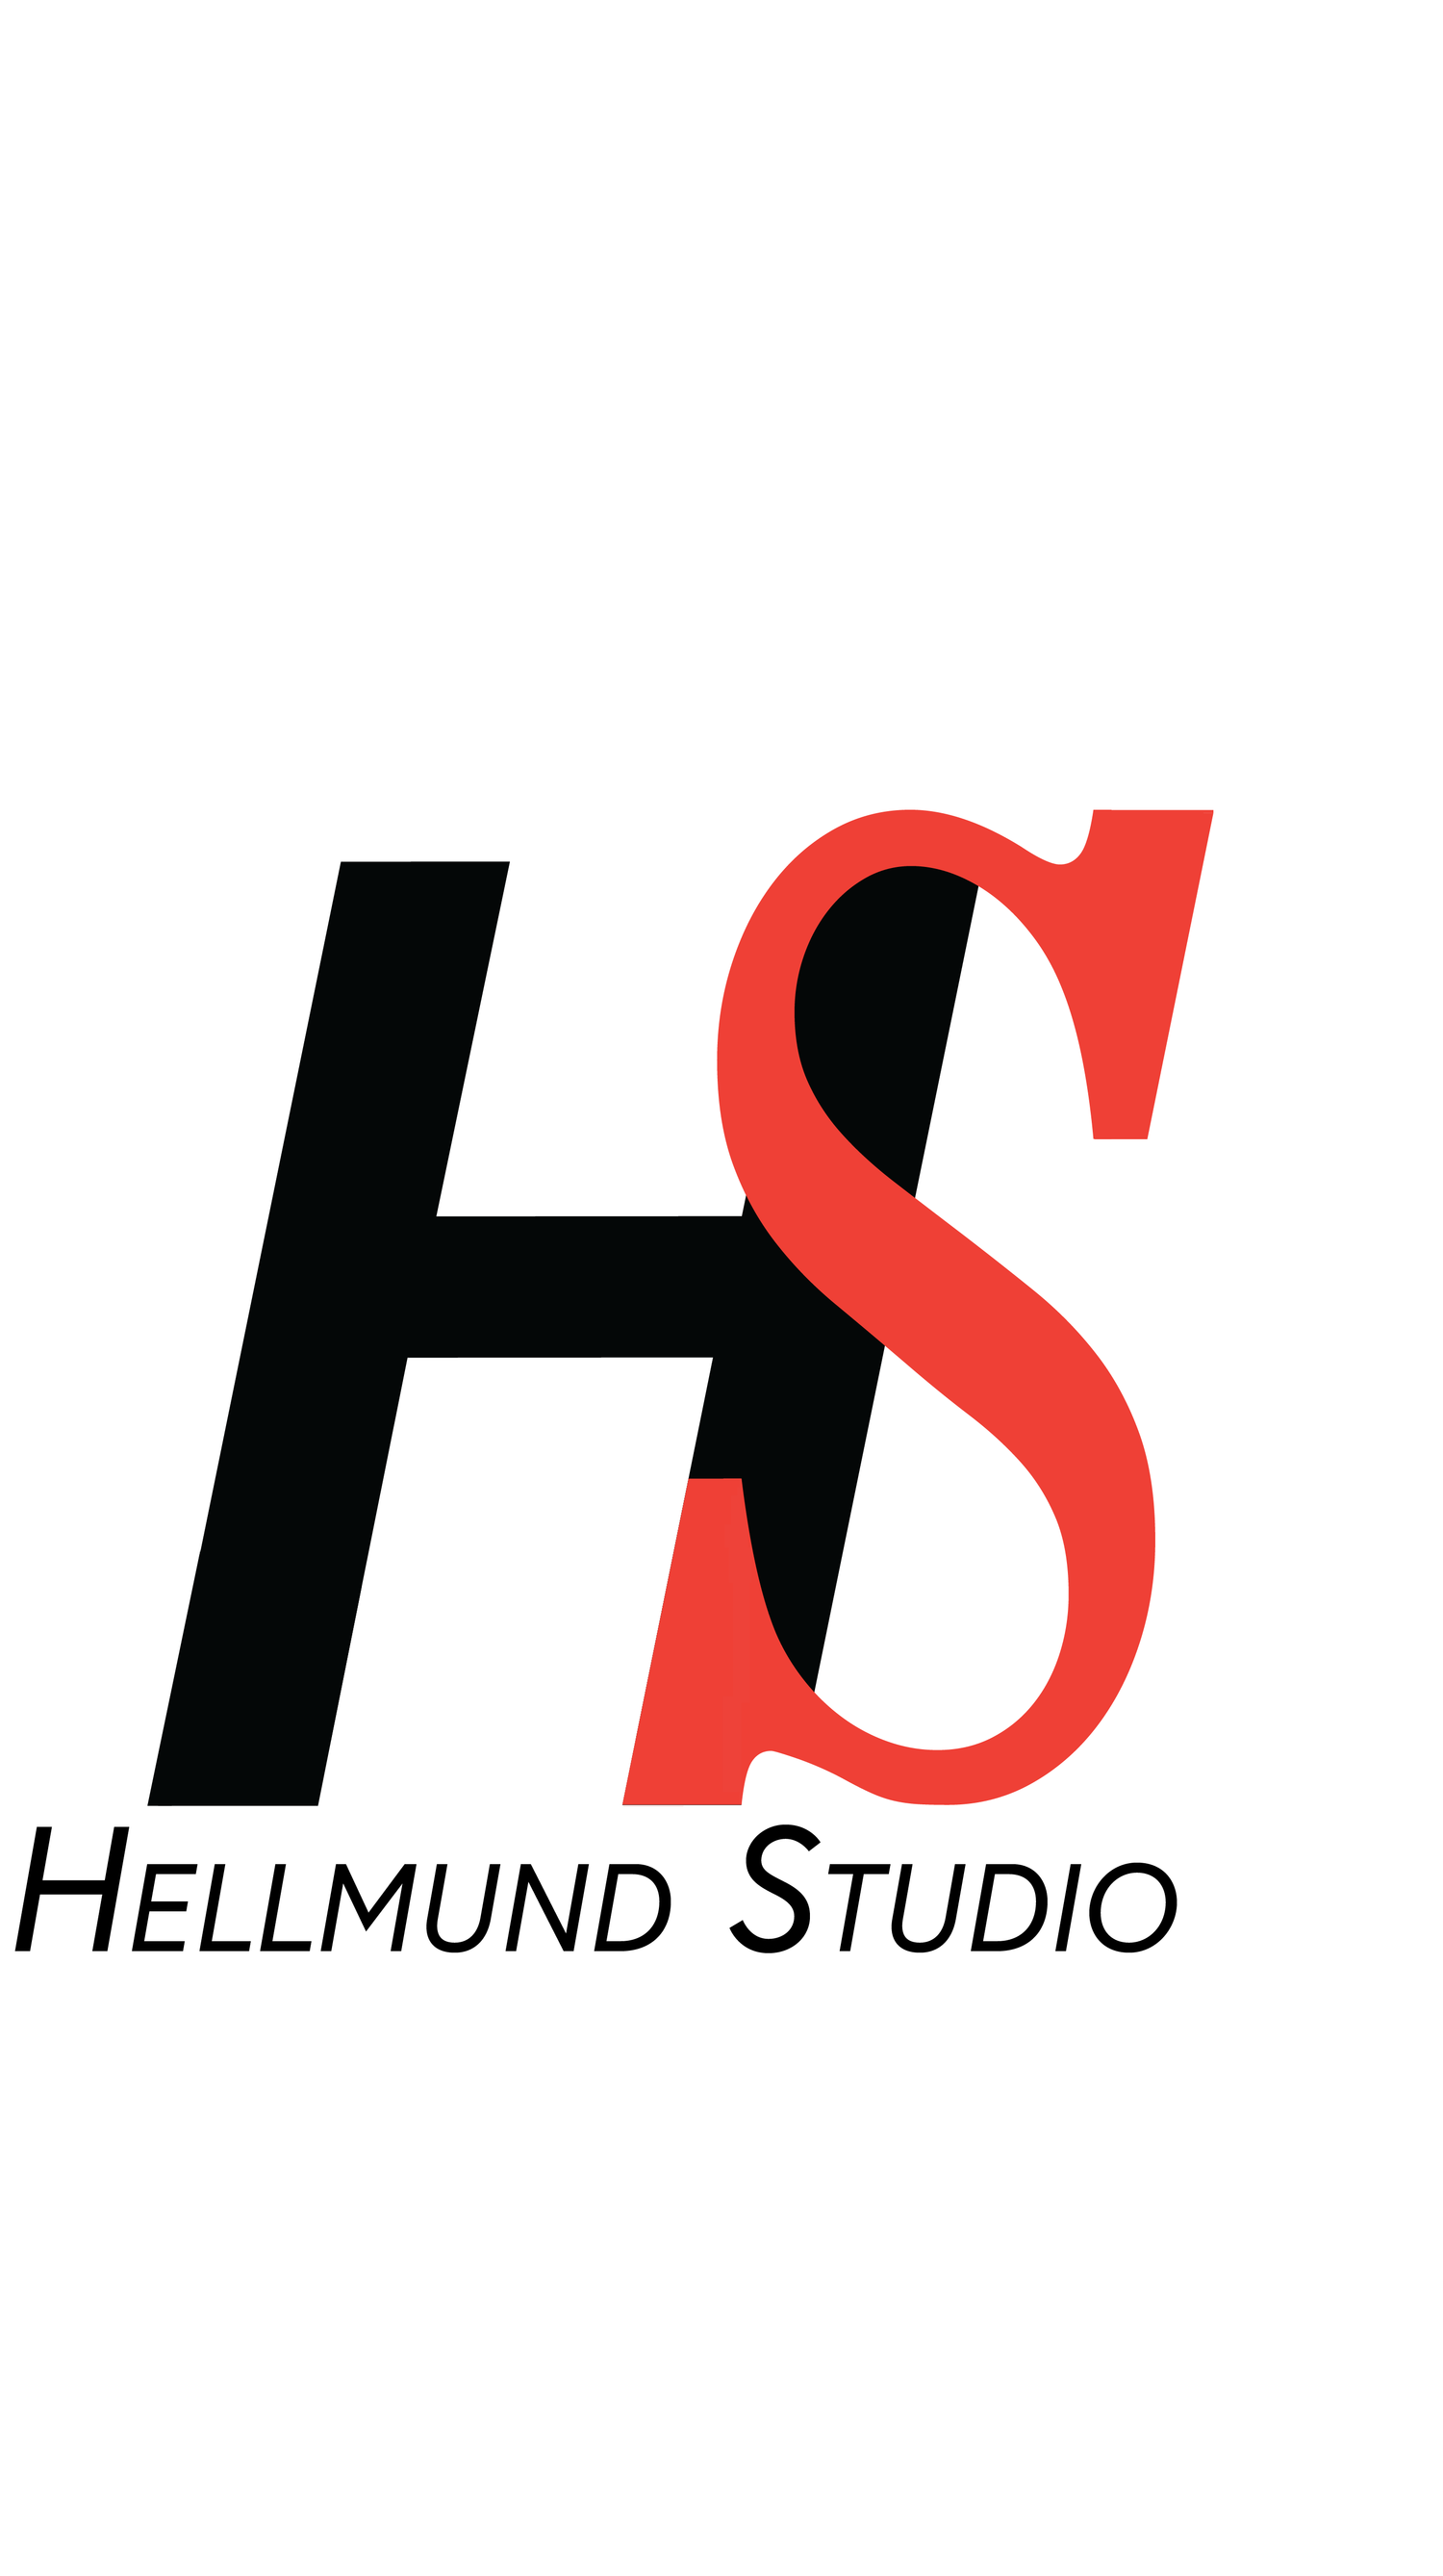 Hellmund Studio